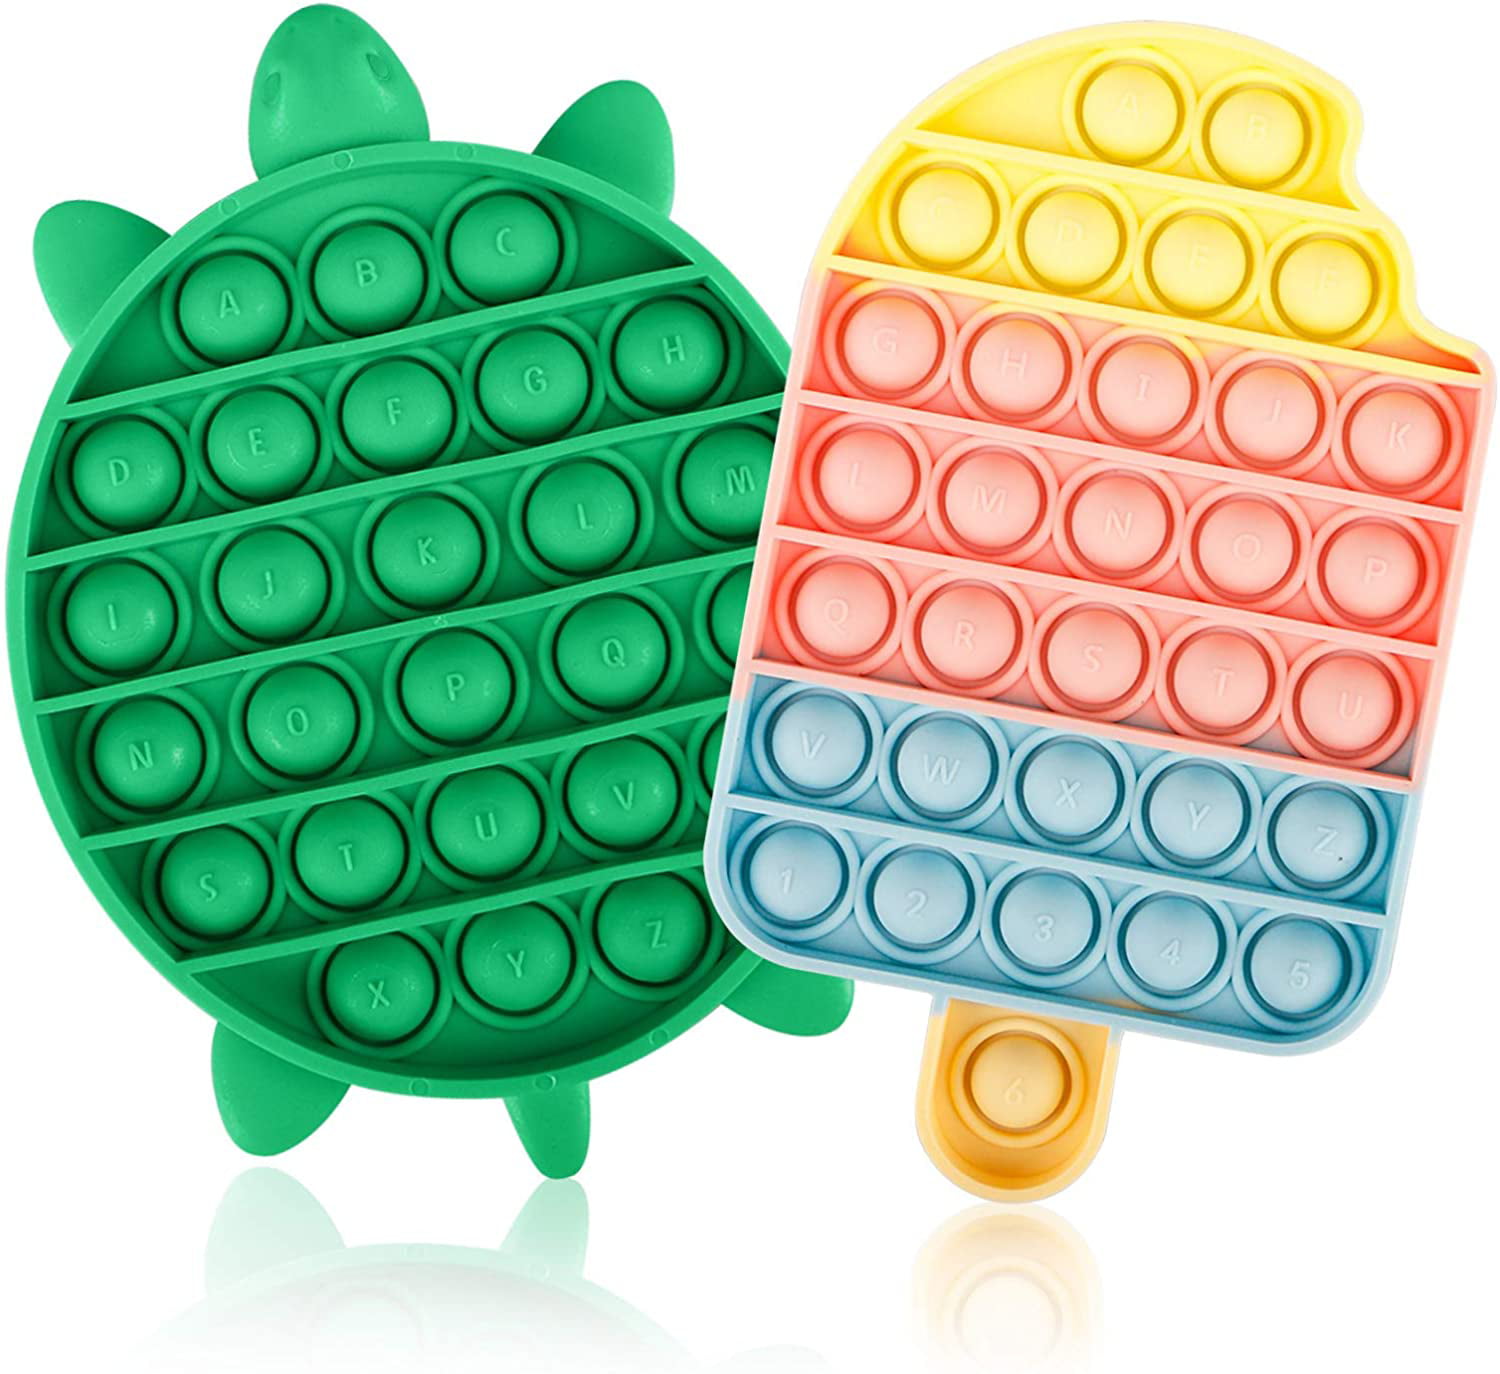 Details about   4PCS Fidget Toys Set Sensory Tools Bundle Stress Relief Hand Toy For Kids Adults 